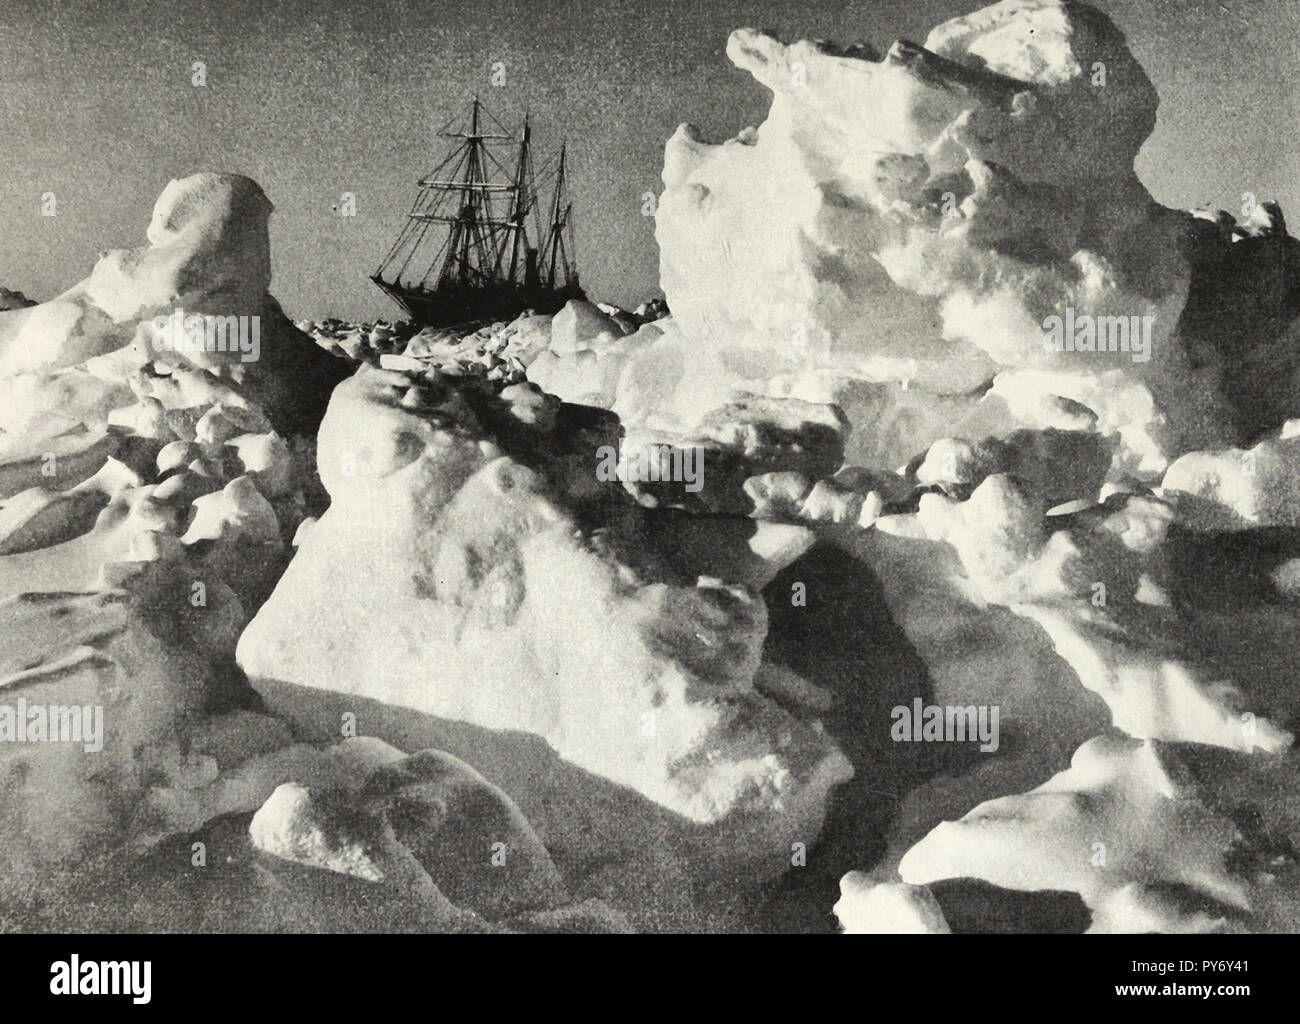 Los condenados, HMS Endurance atrapado en el hielo durante la expedición Shackleton Foto de stock